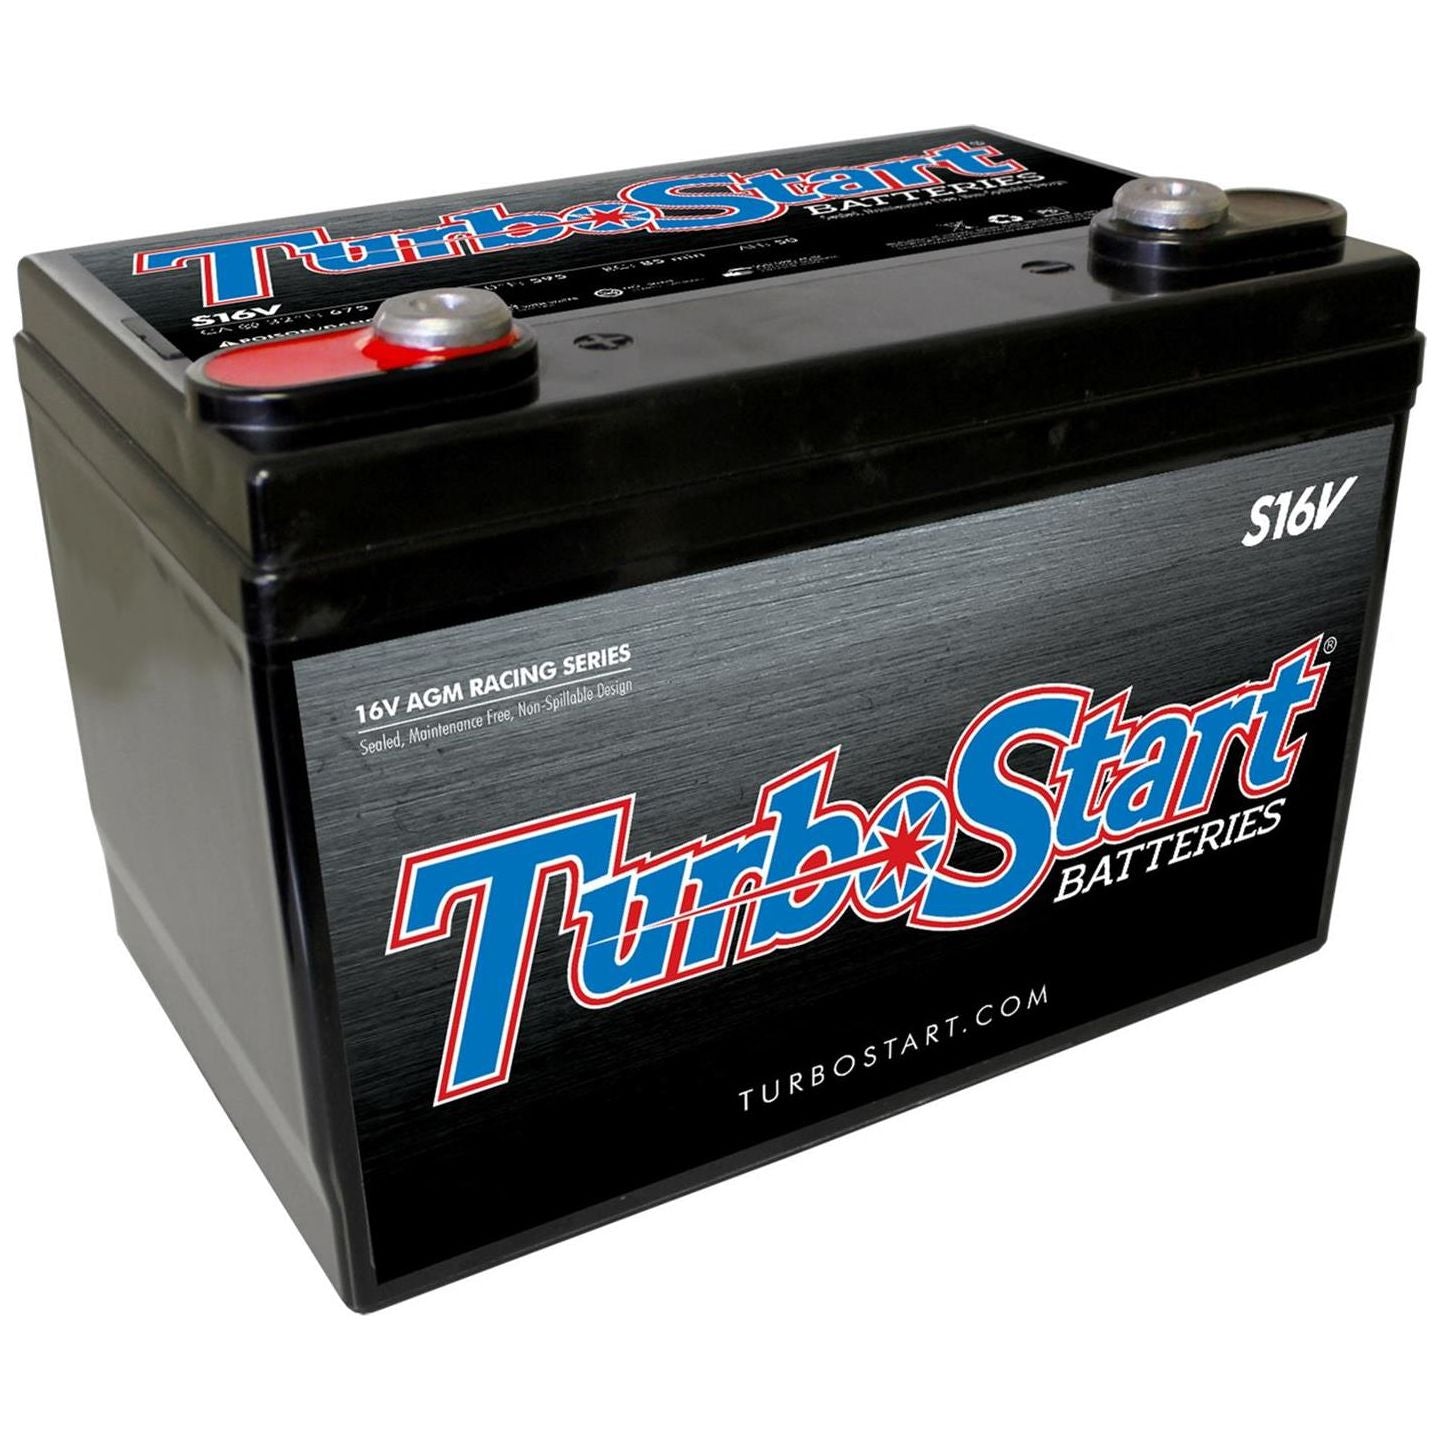 TurboStart 16 V Racing Batteries S16V